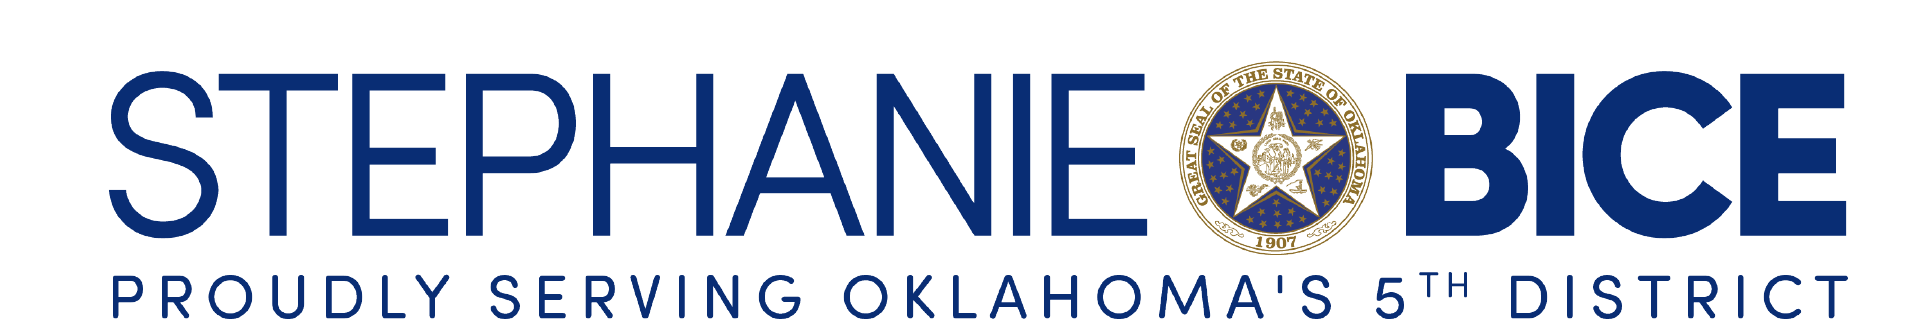 Representative Stephanie Bice logo